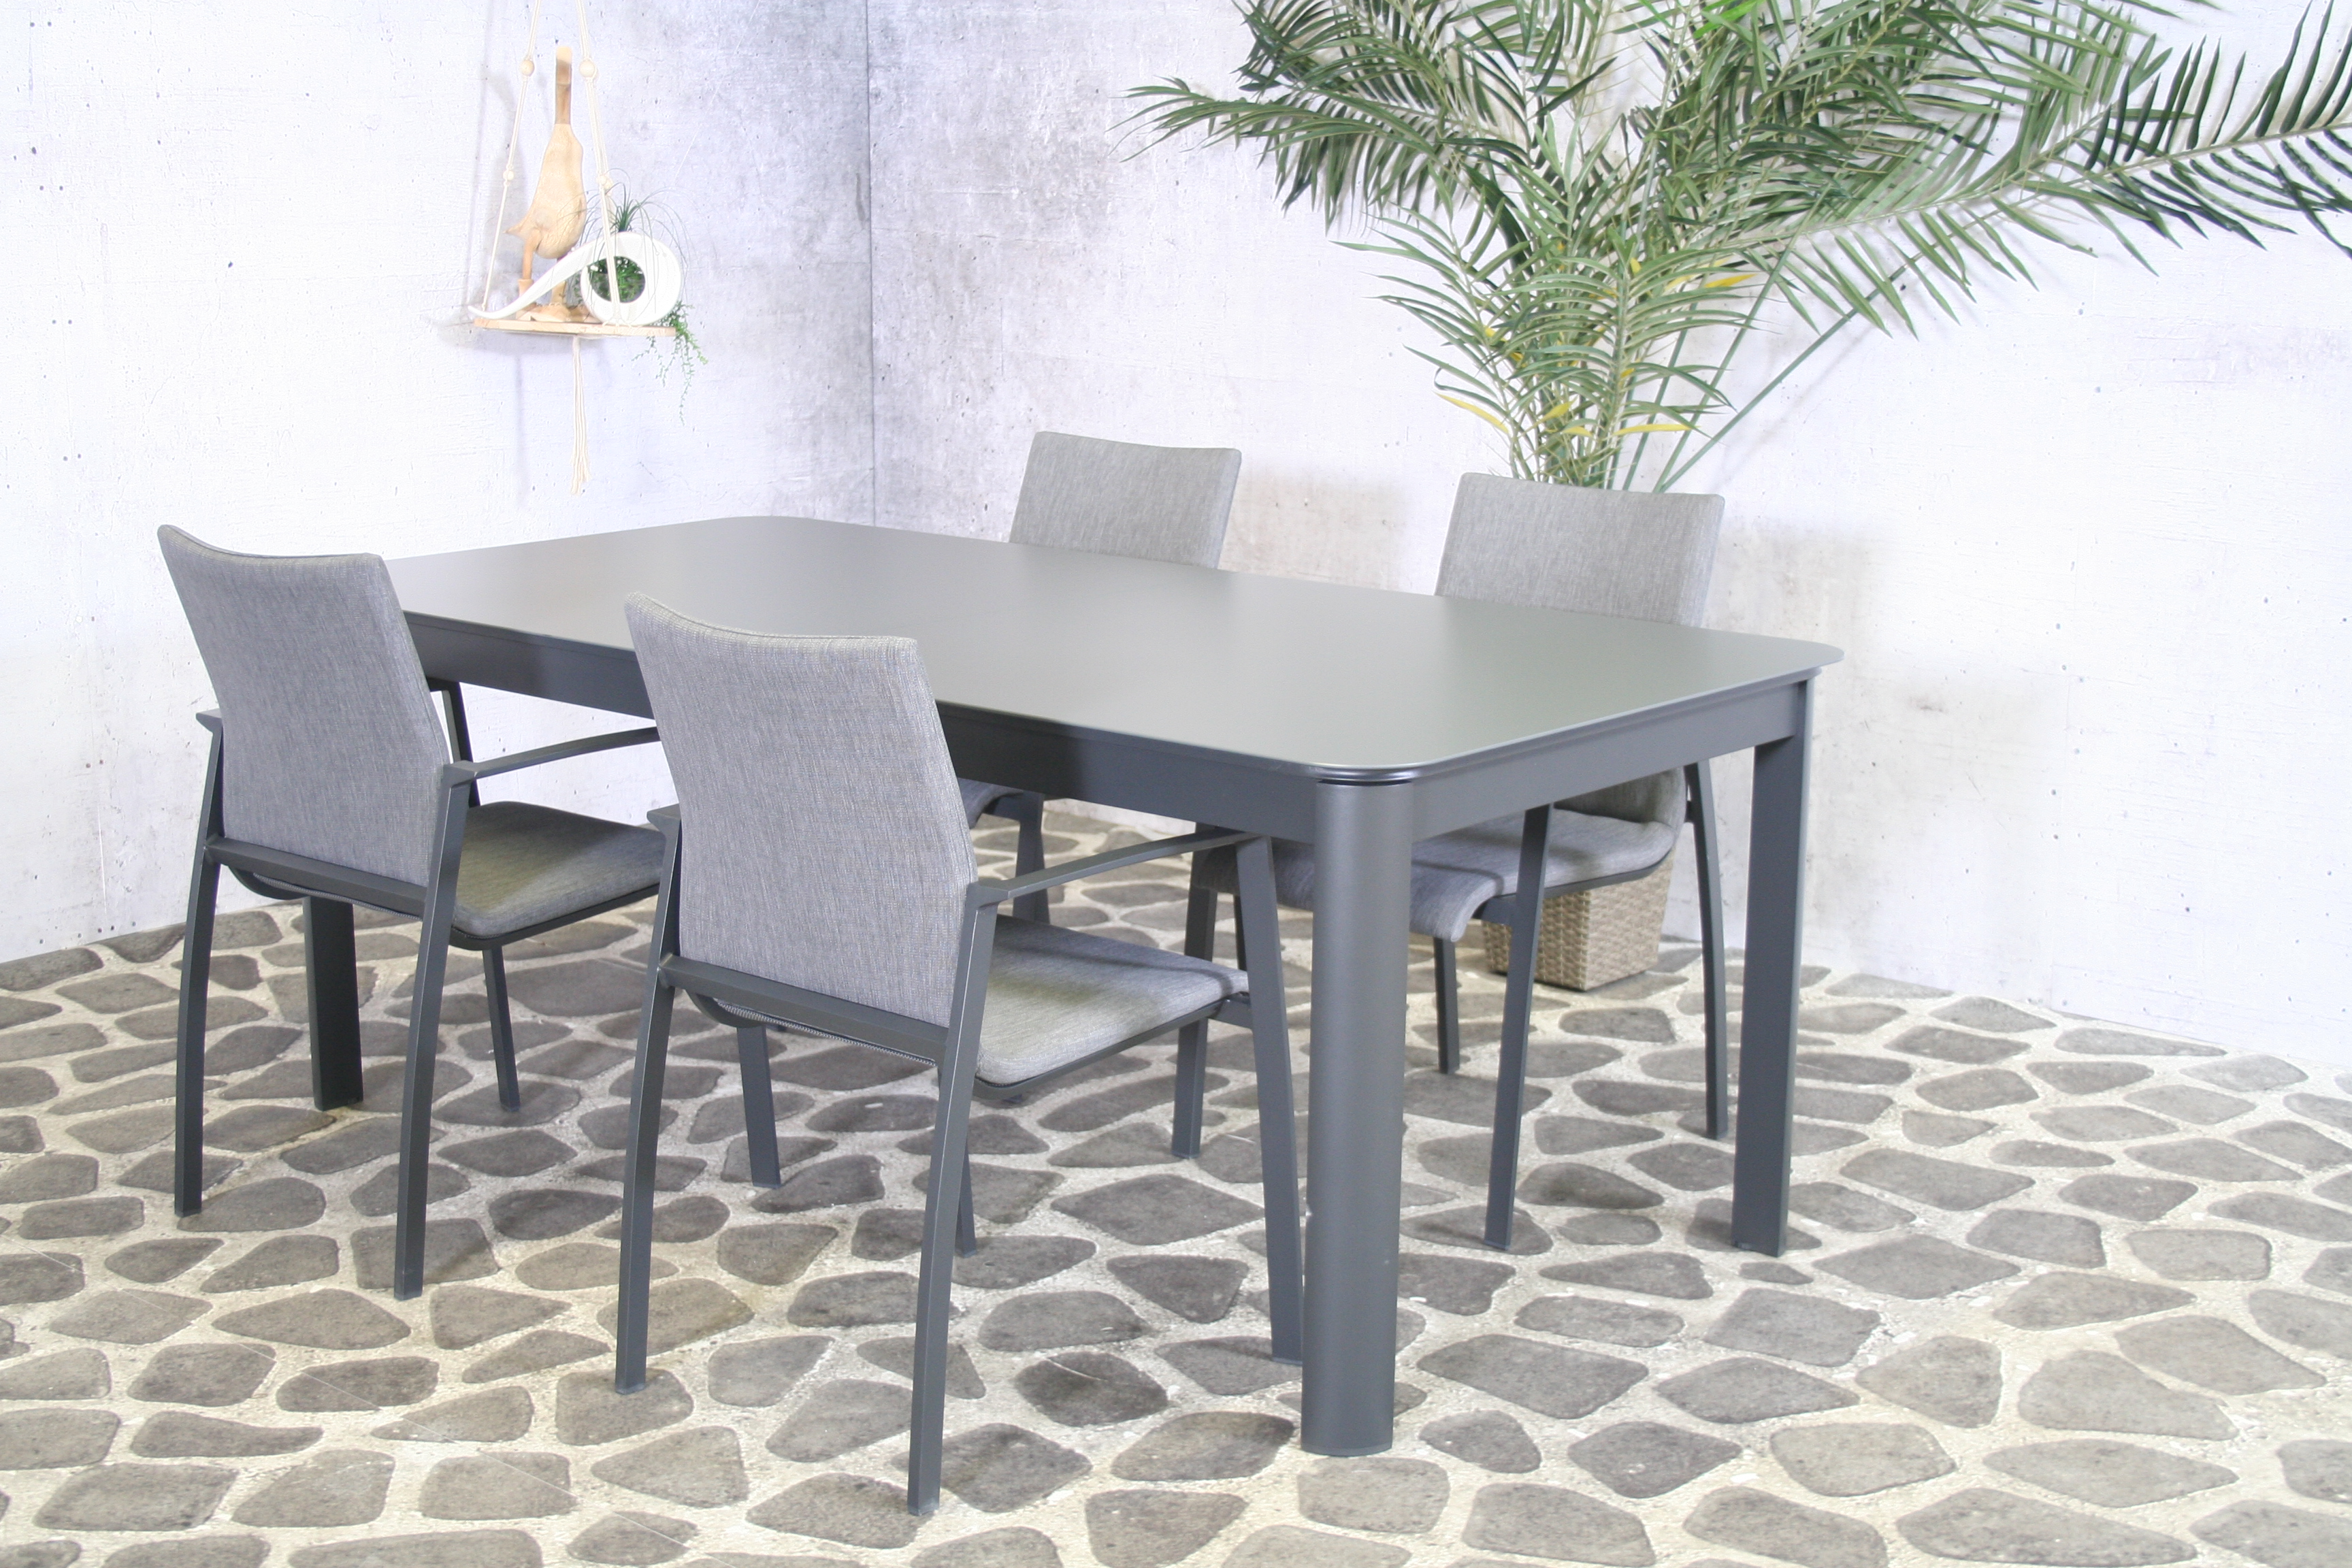 Essgruppe Solero - Tisch 200/300cm x 100cm mit 8 Stapelstühlen Solero